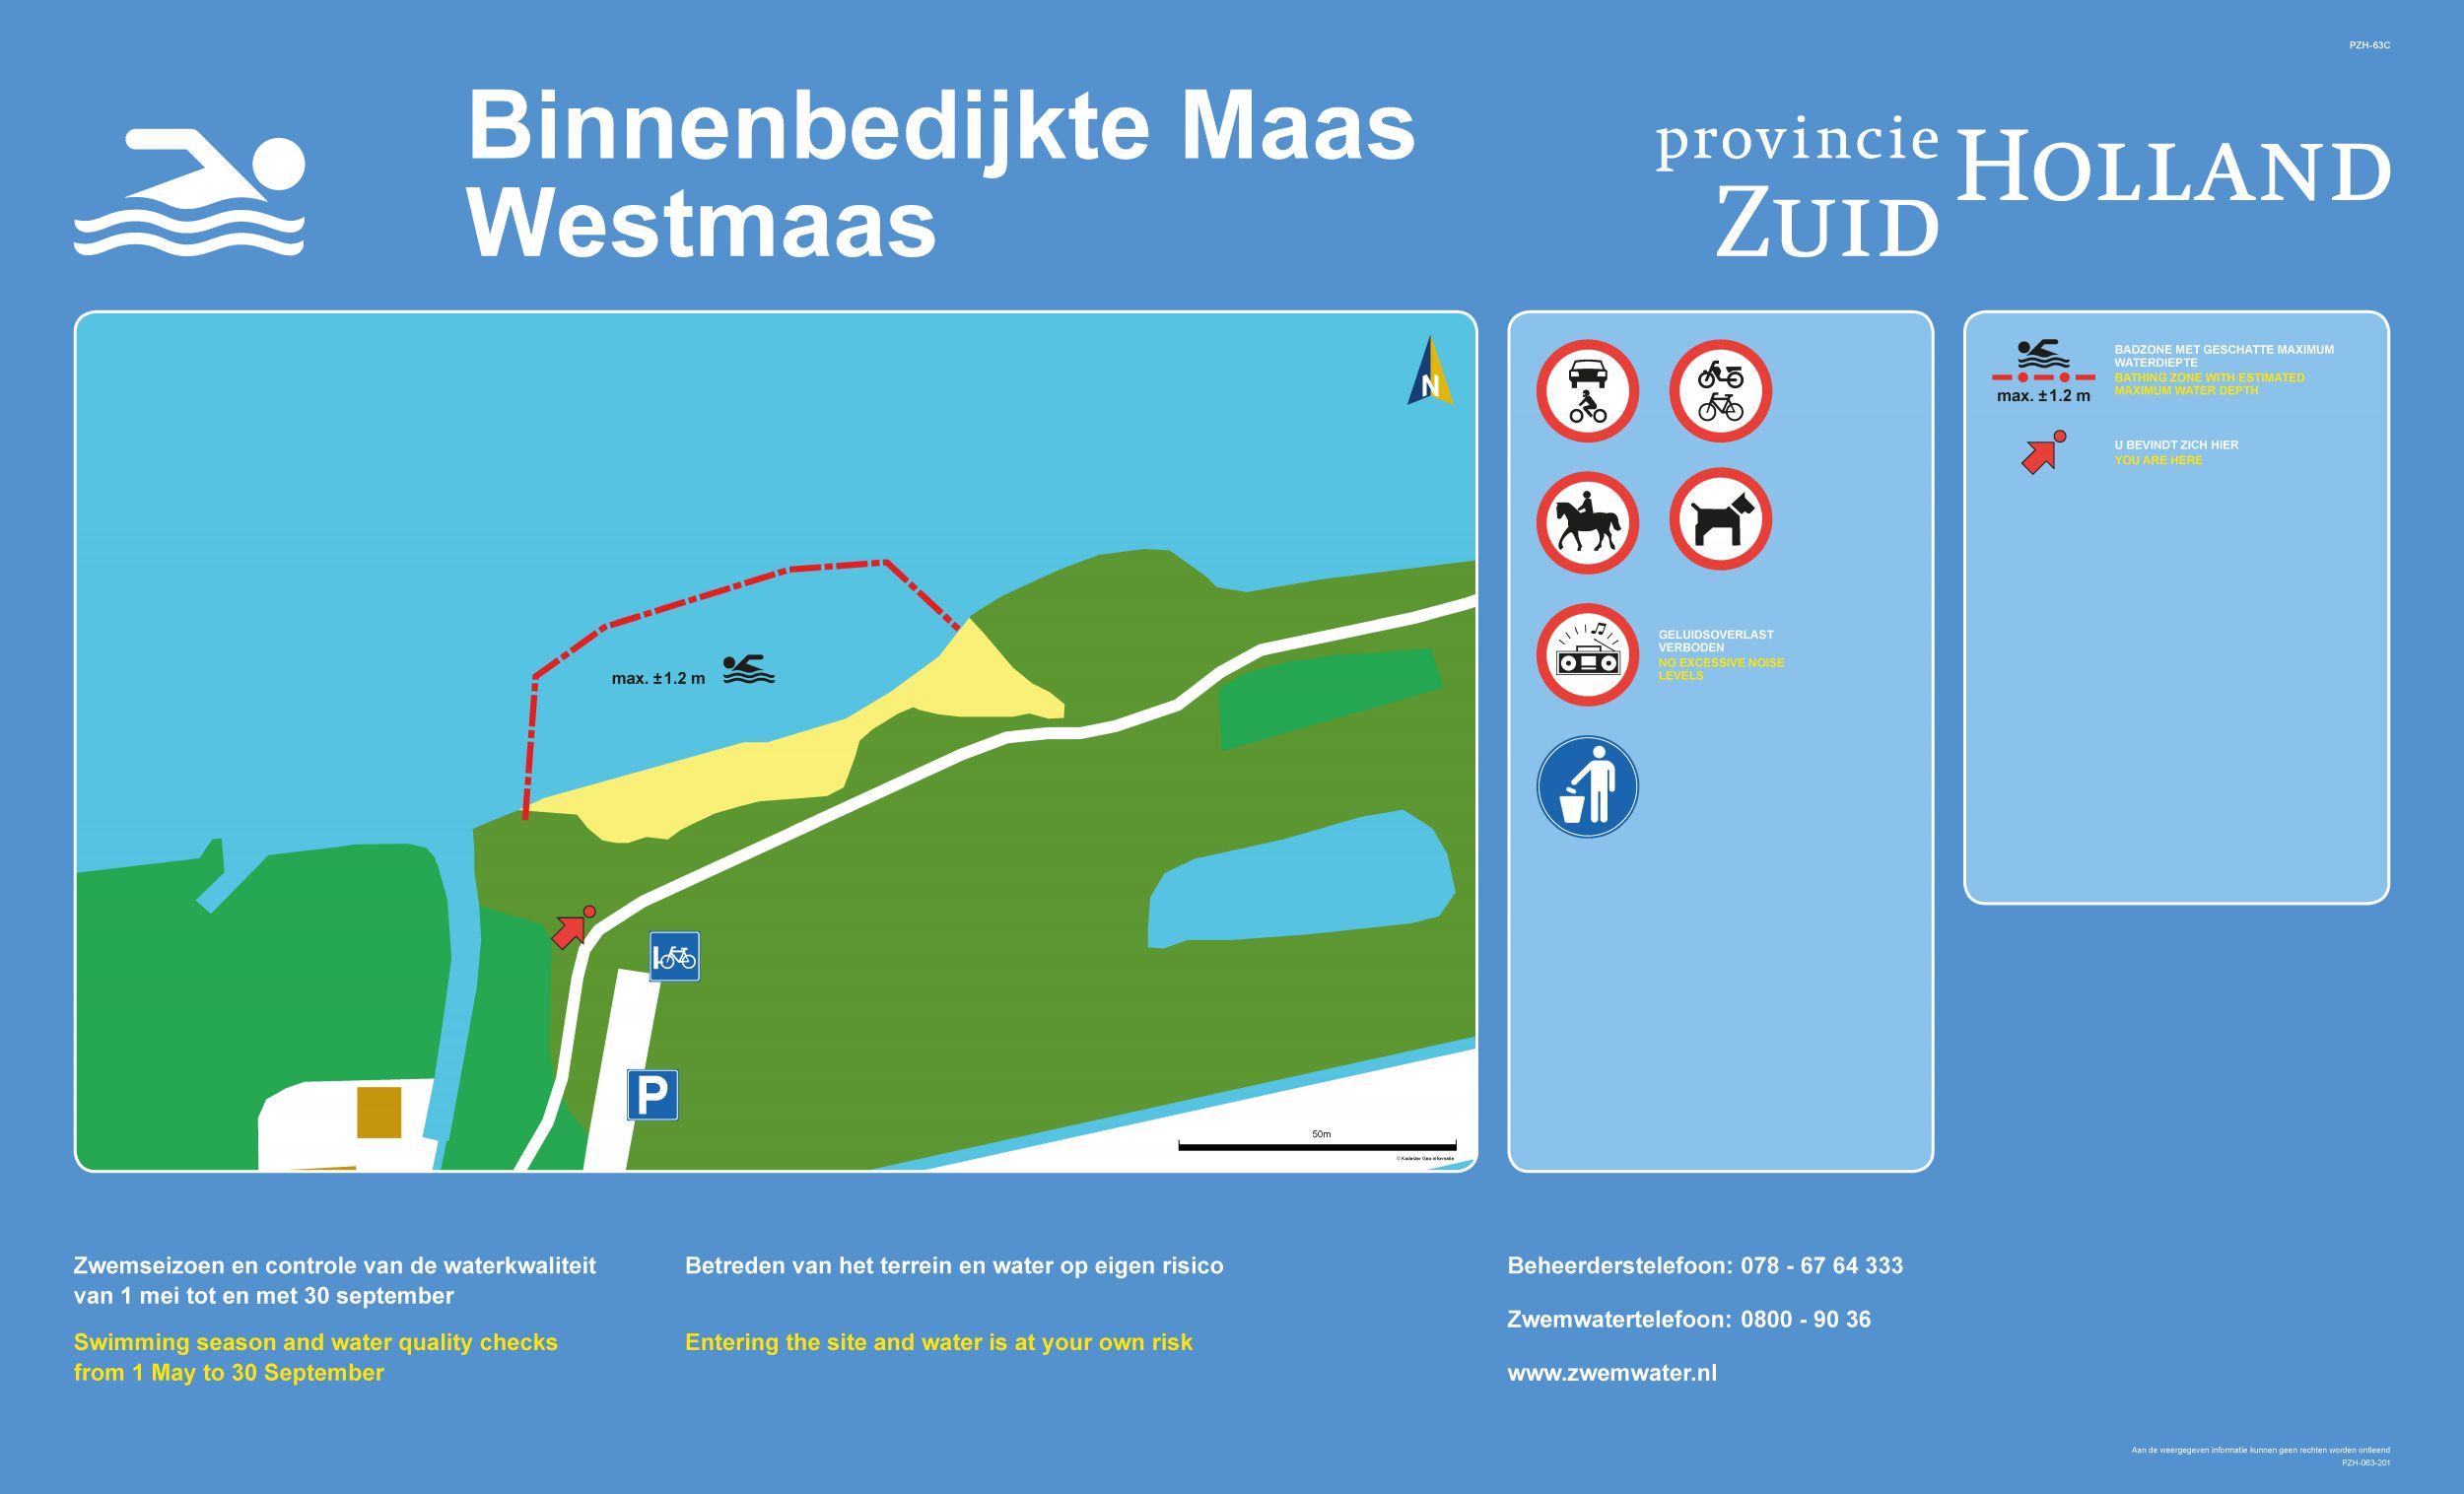 Het informatiebord bij zwemlocatie Binnenbedijkte Maas Westmaas